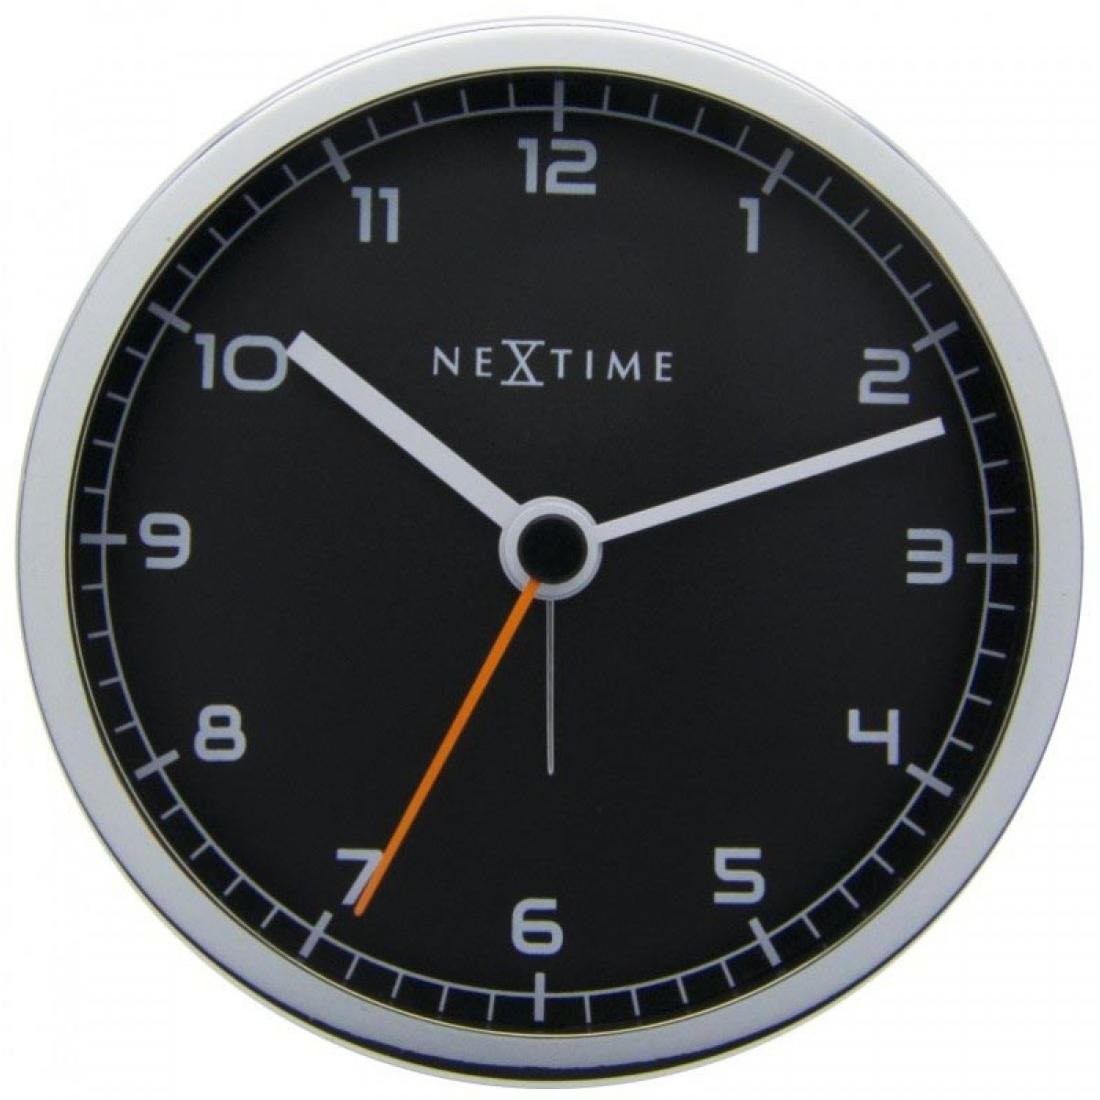 Nextime Zegar stołowy Company Alarm, czarny, 9x9x7,5 cm